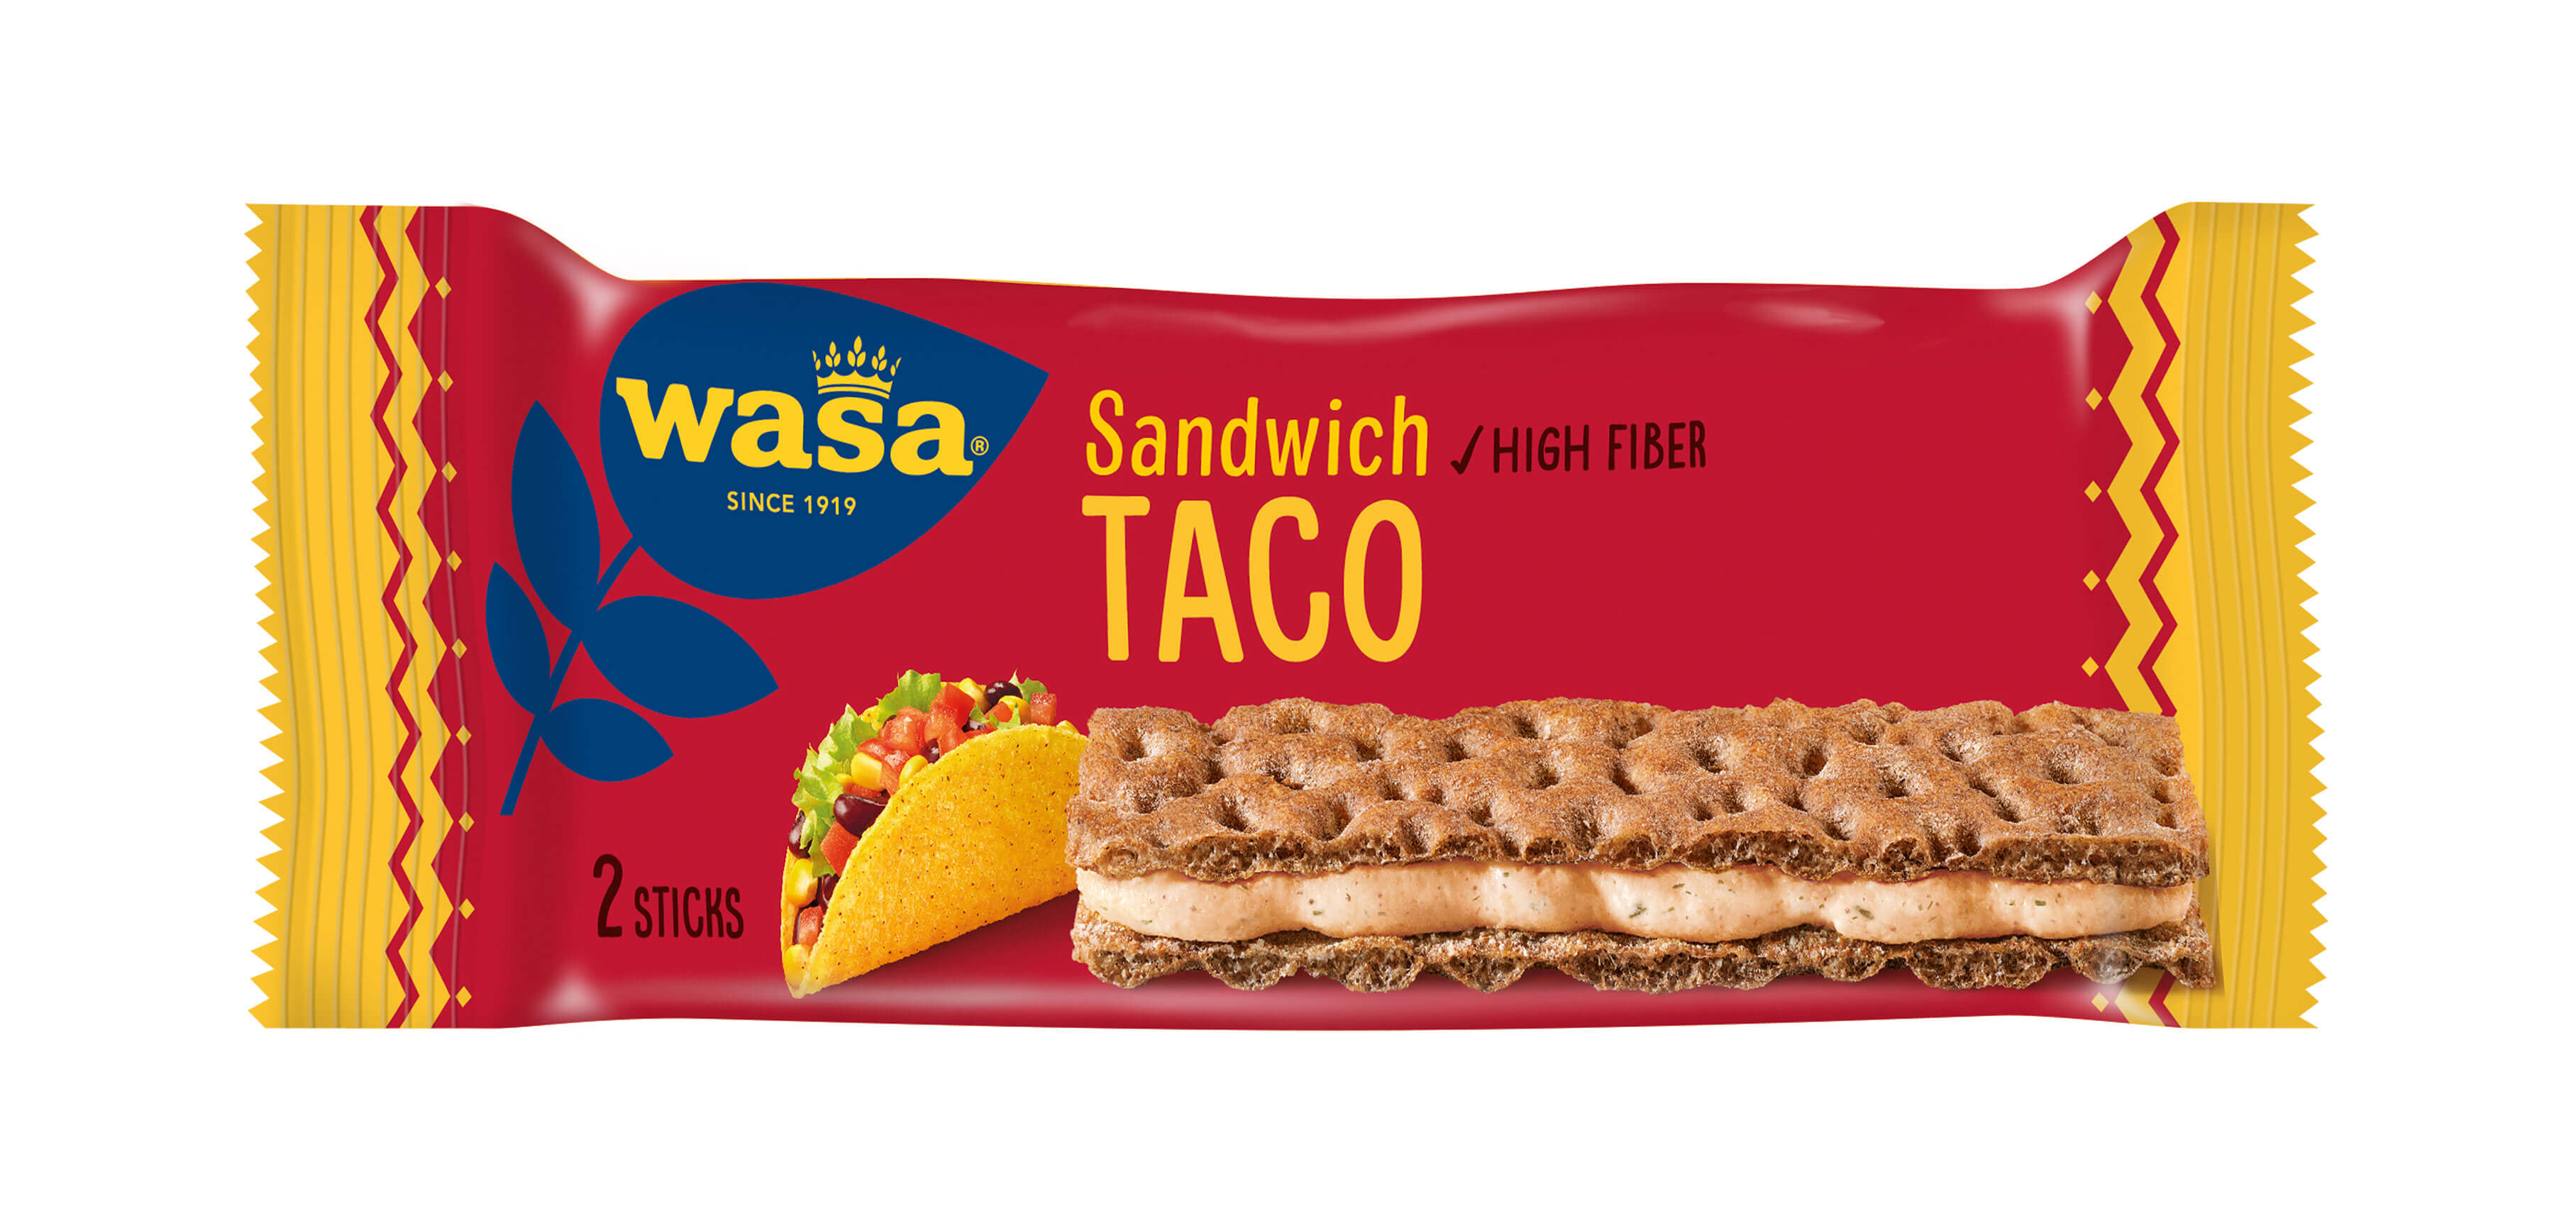 Wasa Sandwich Taco - Upptäck det perfekta mellanmålet, gott knäckebröd med krämig fyllning. Utmärkt som ett lätt mellanmål på språng och som goda mellanmål efter skolan eller innan träning.